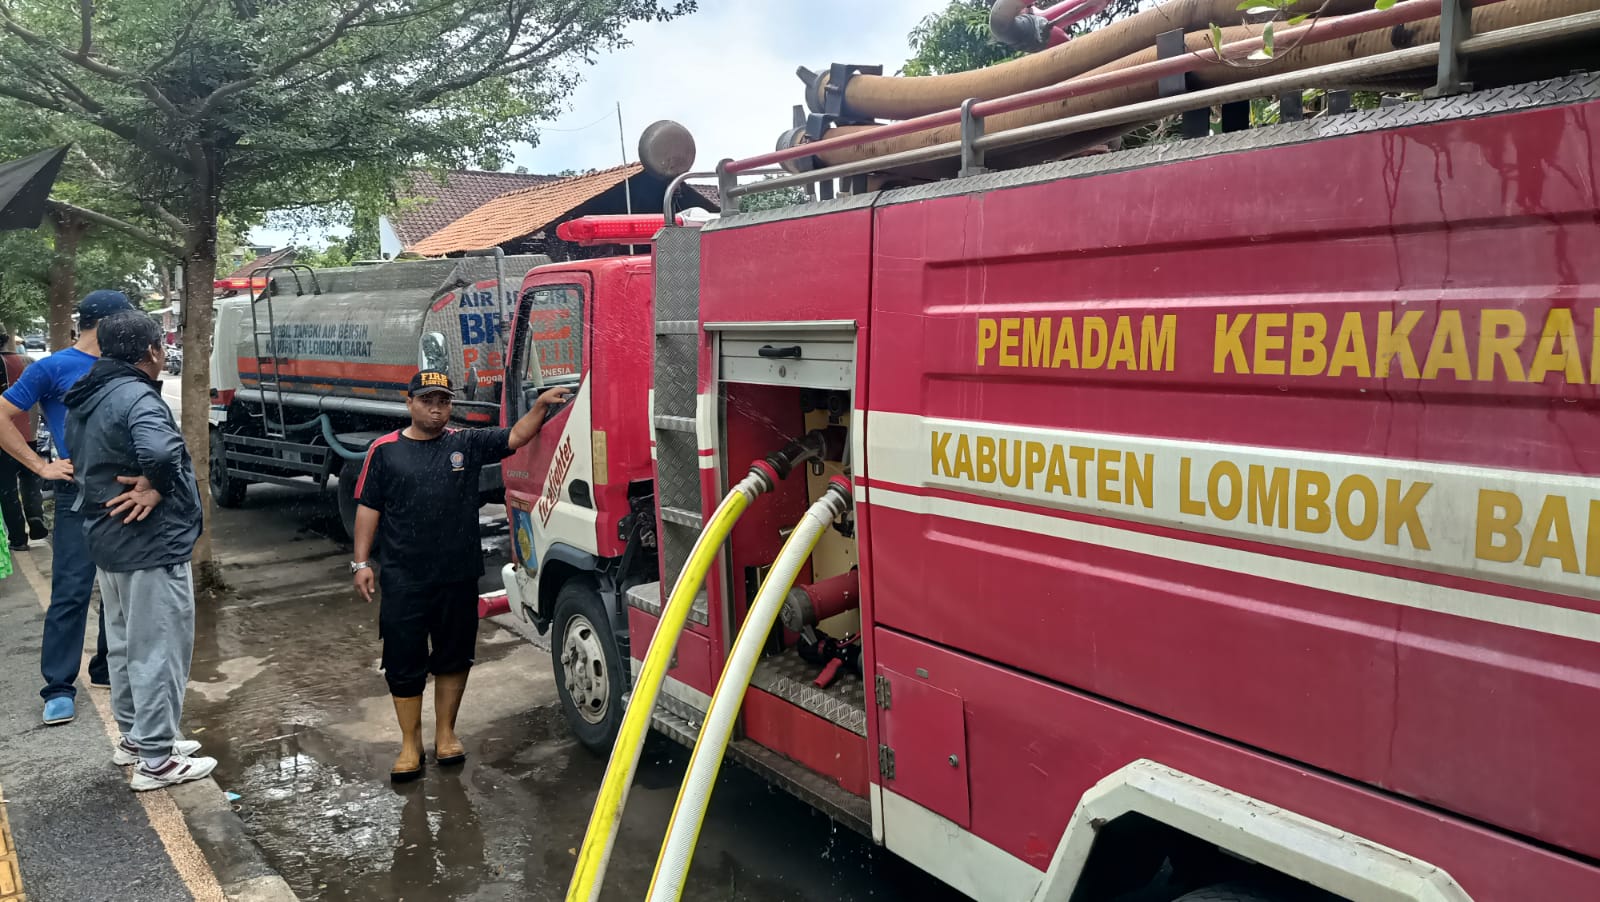 Kebakaran Rumah Dinas Guru di Gerung, Polisi dan Damkar Berupaya Padamkan Api